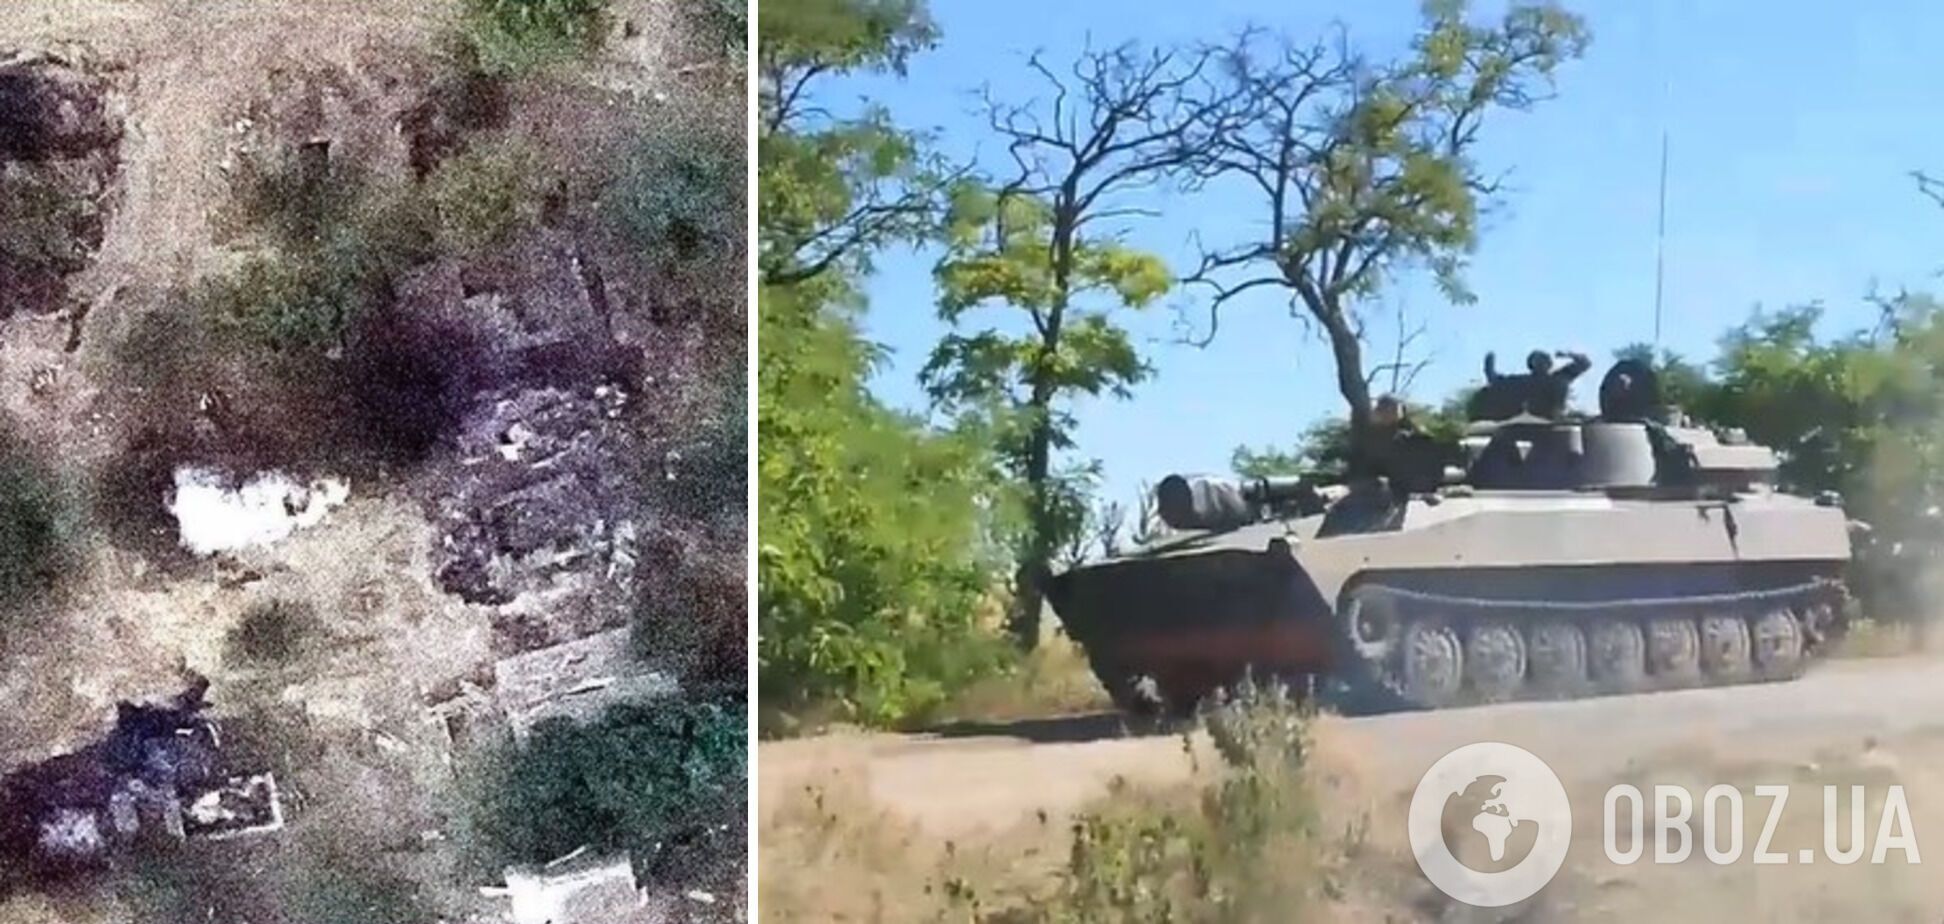 "Демілітаризація" триває: українські морпіхи знищили бензовози, БМП і боєкомплект окупантів. Відео